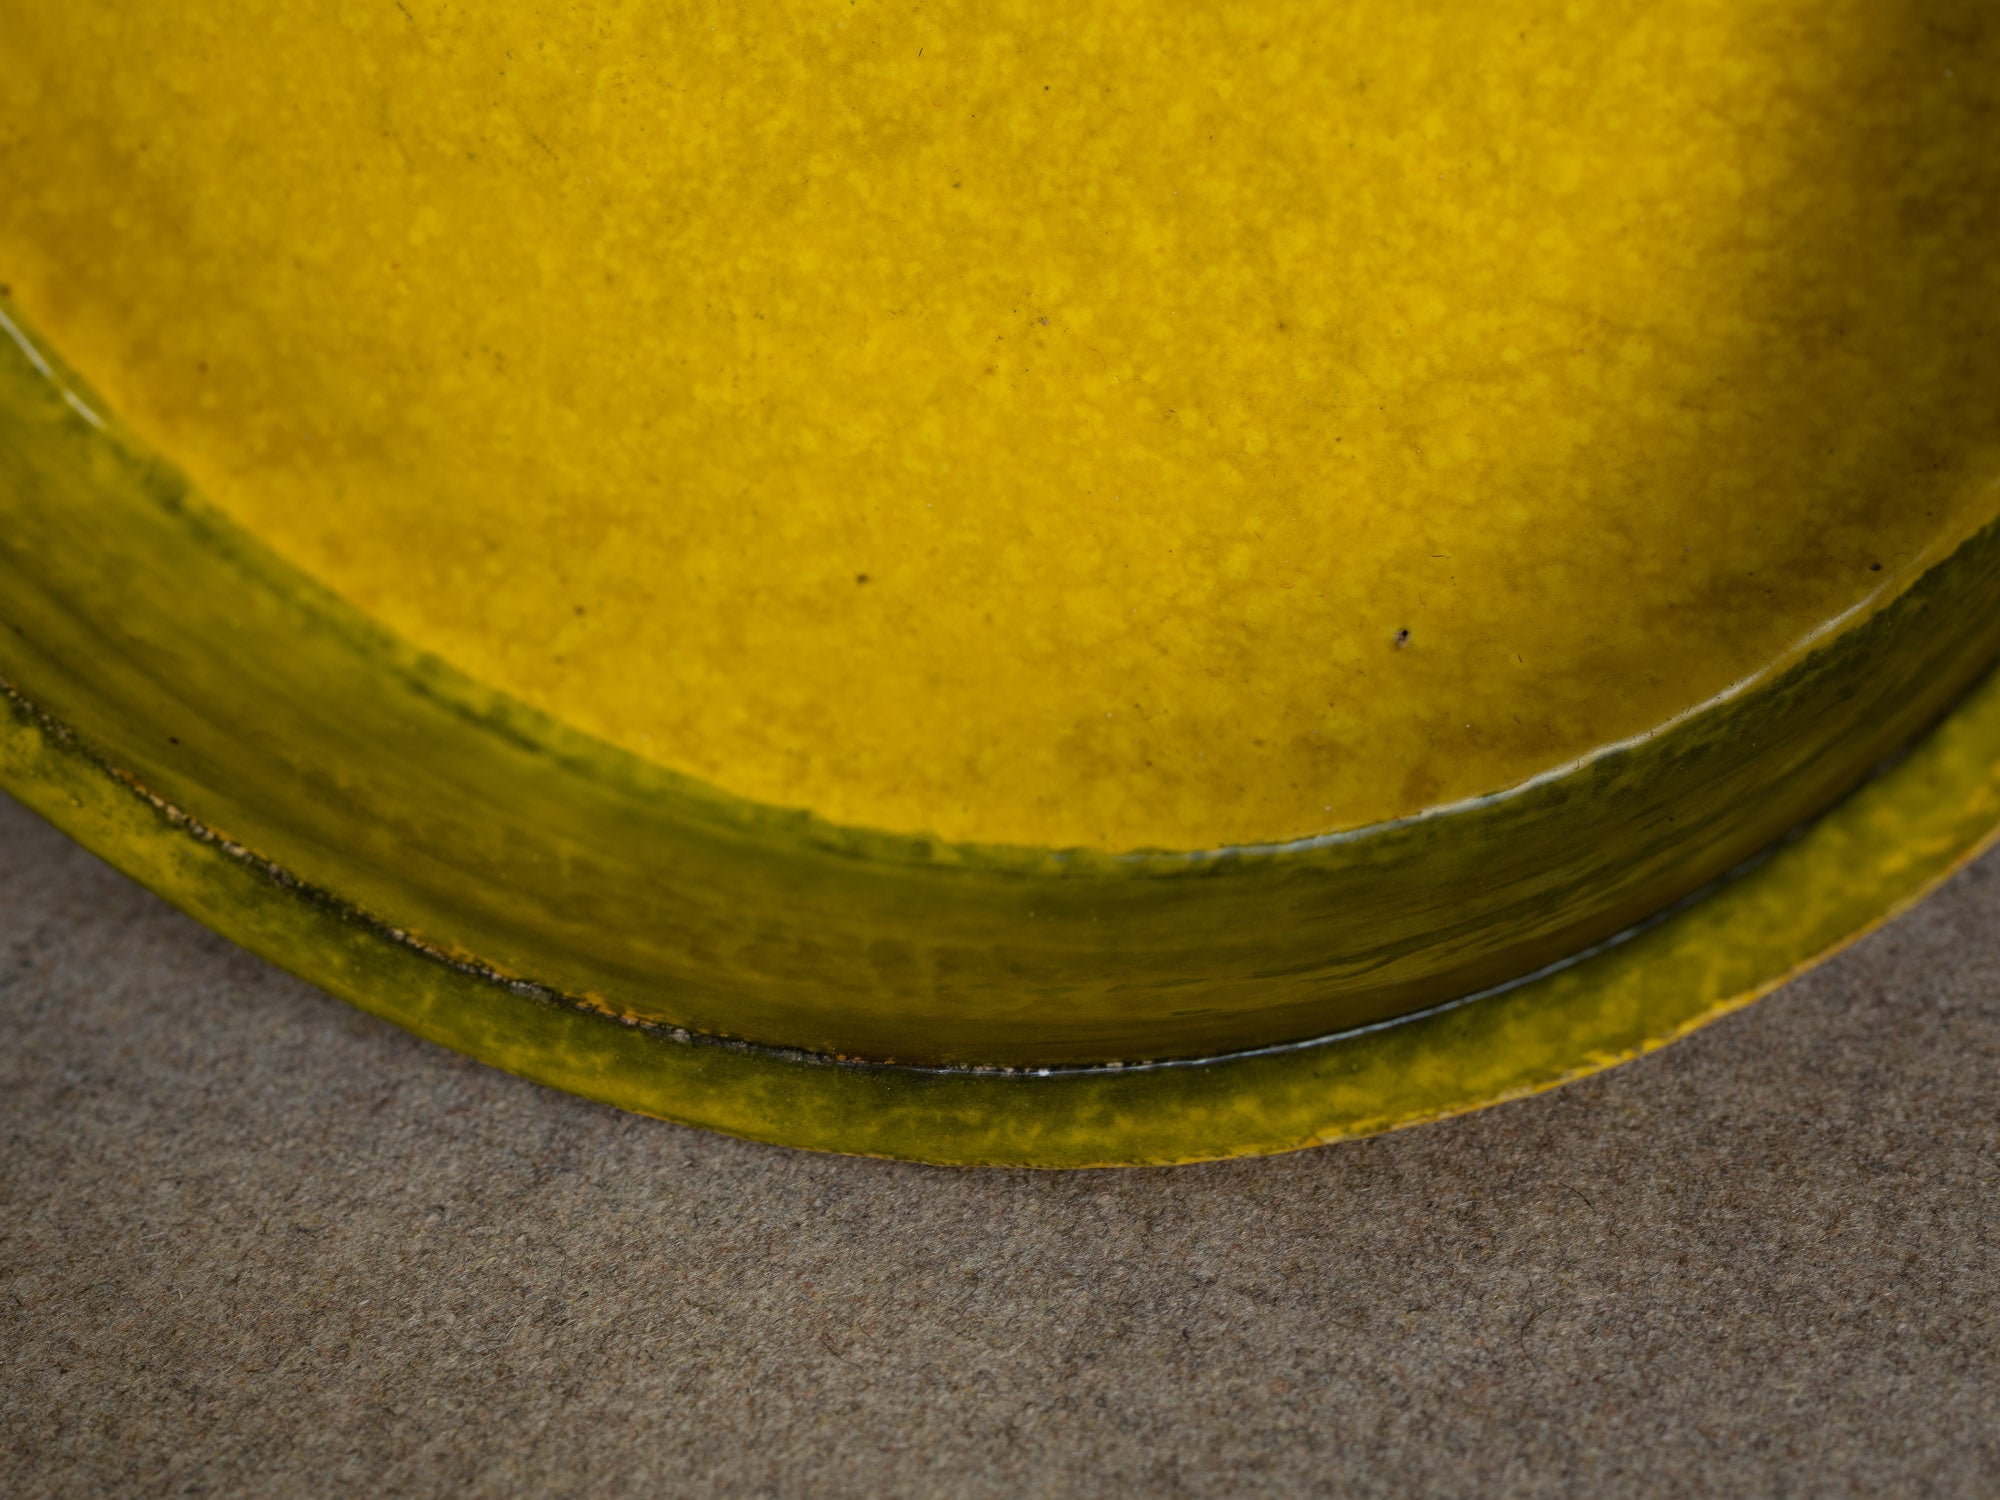 Rare coupe circulaire en faïence par Aldo Londi pour Bitossi, Italie (vers 1960)..Rare earthenware circular bowl by Aldo Londi for Bitossi, Italy (circa 1960)